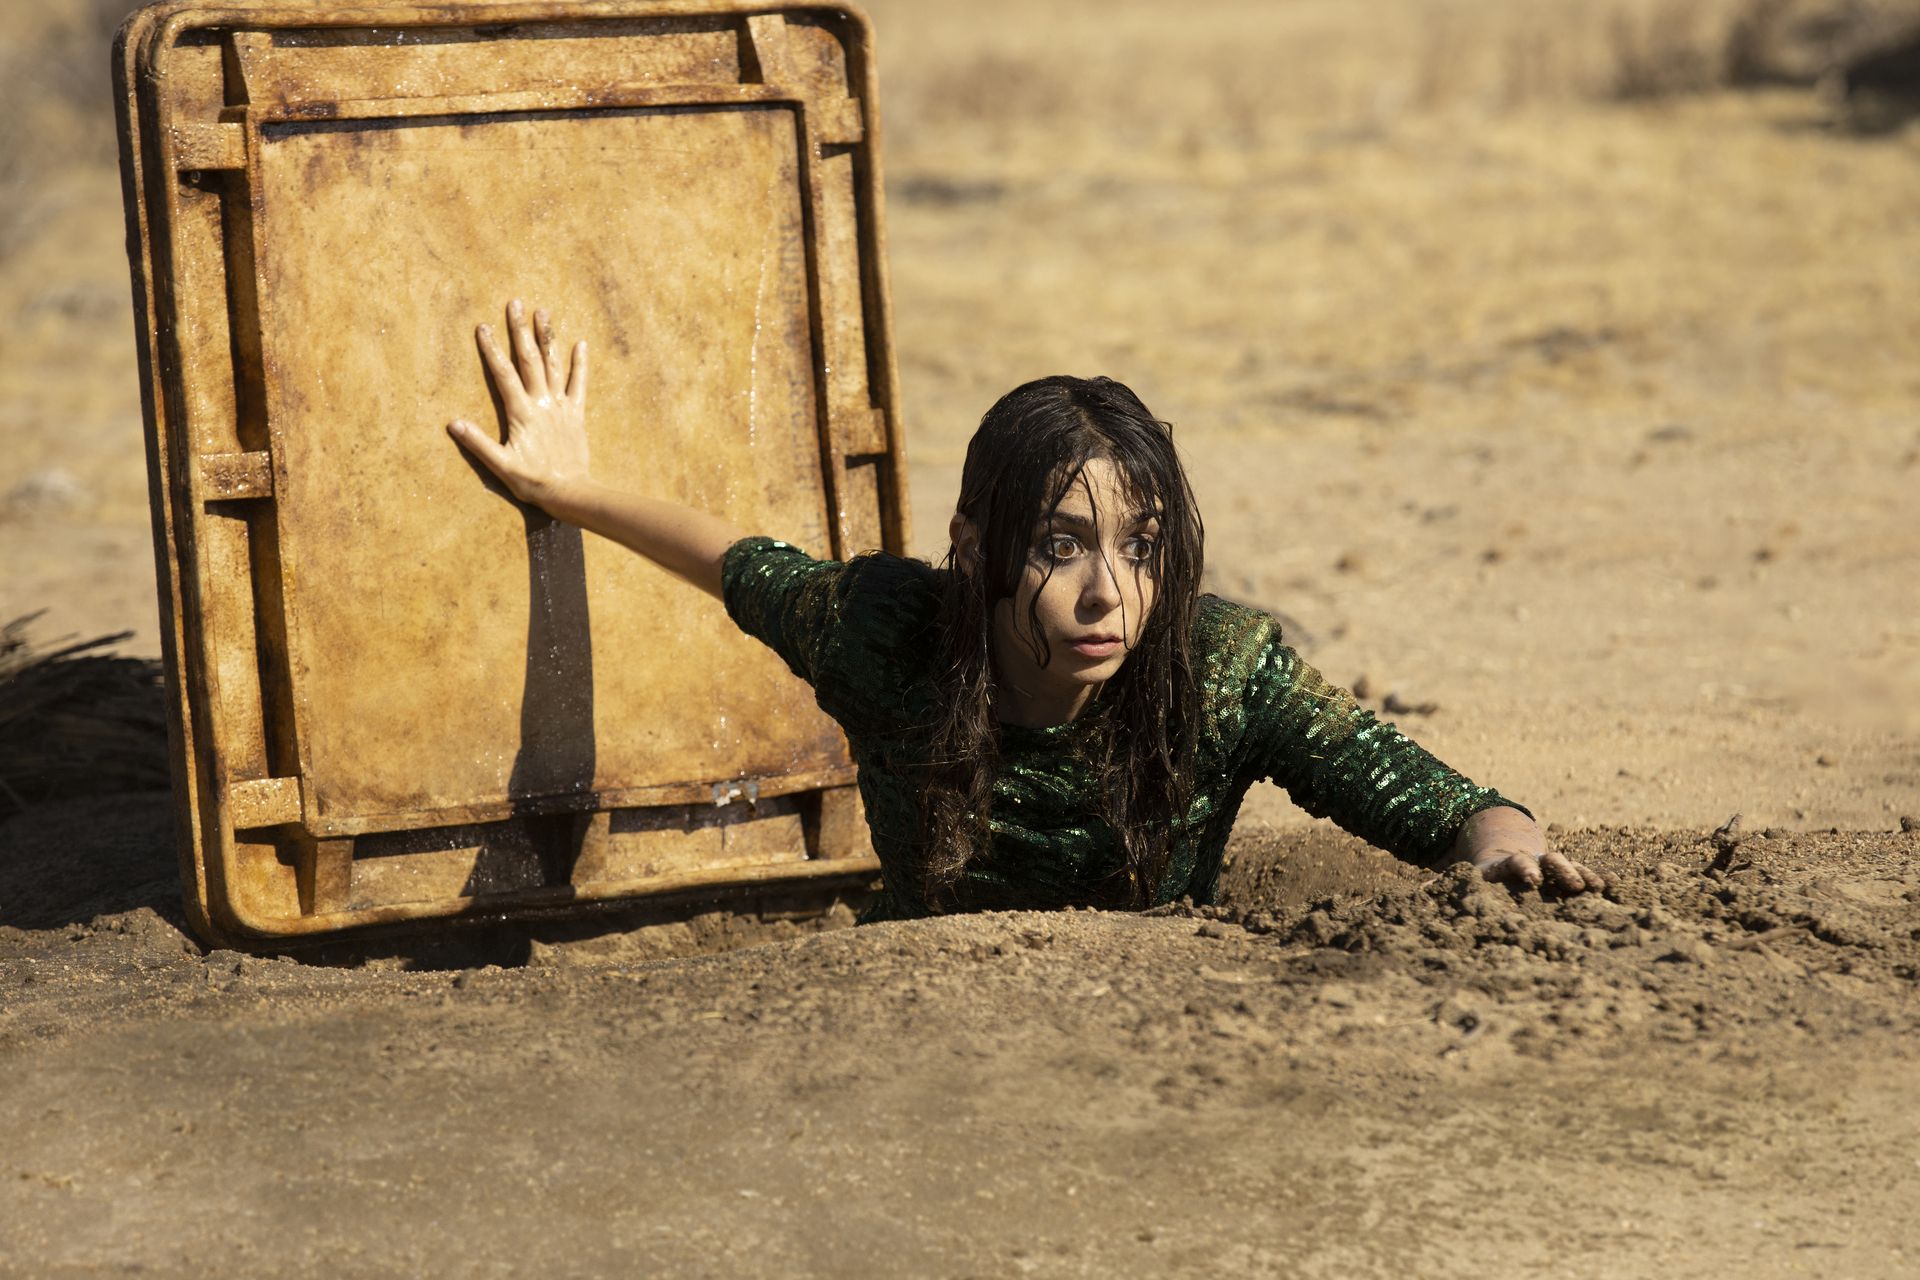 כריסטין מיליוטי בתפקיד לוז בתכנית לאהבה, מטפסת מתוך פתח המתכת אל נתיב מים תת קרקעי במדבר.